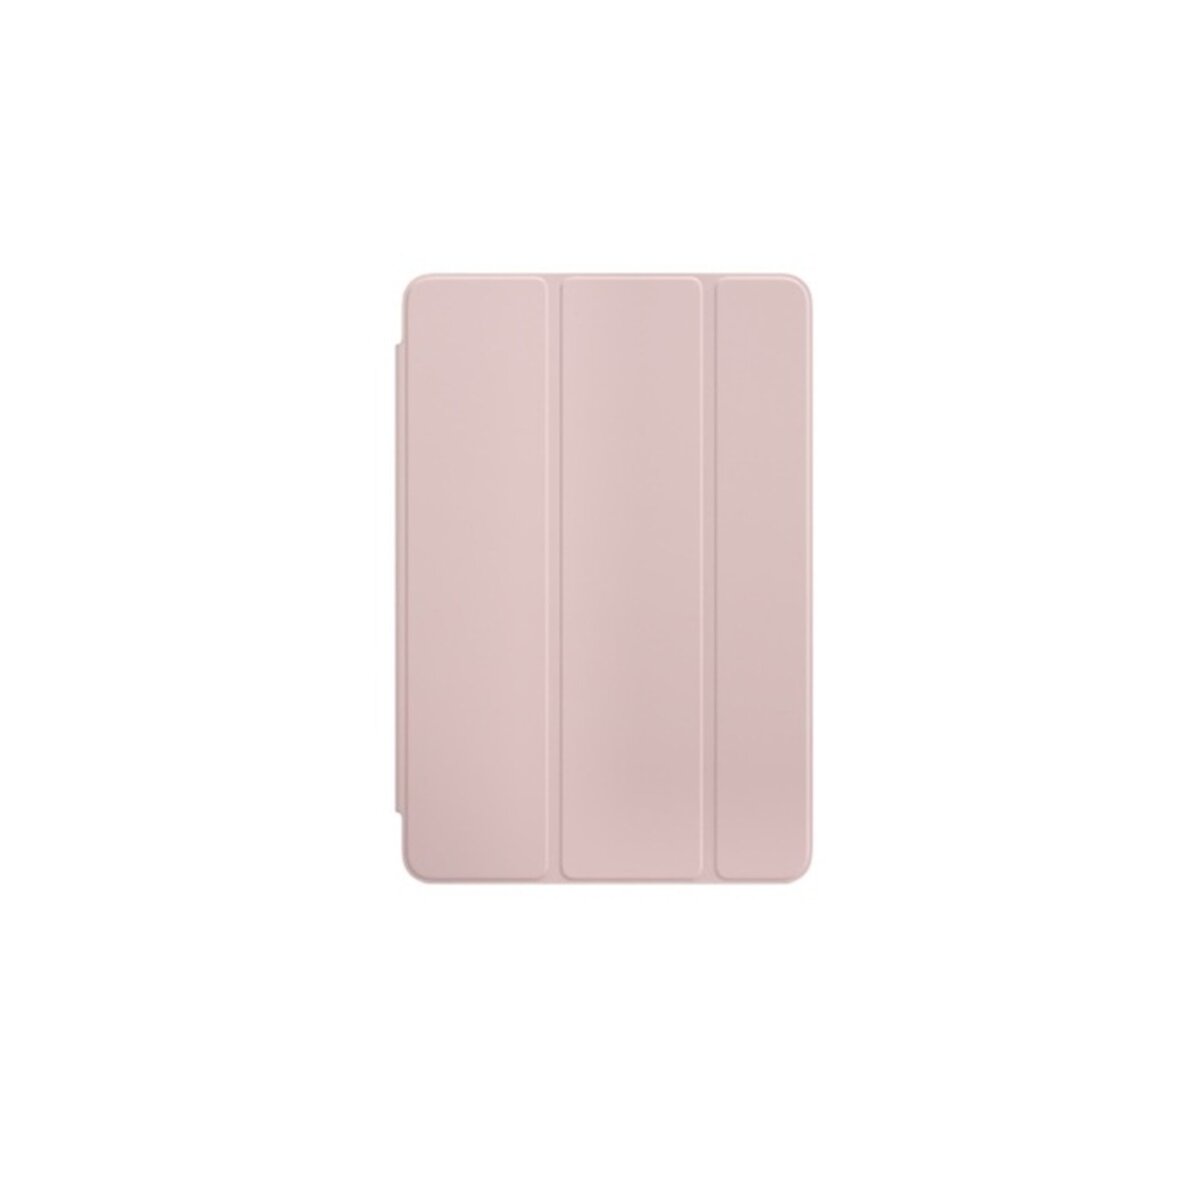 APPLE Protection pour tablette -  Smart cover pour iPad mini 4 - 7, 9 pouces - Rose sable